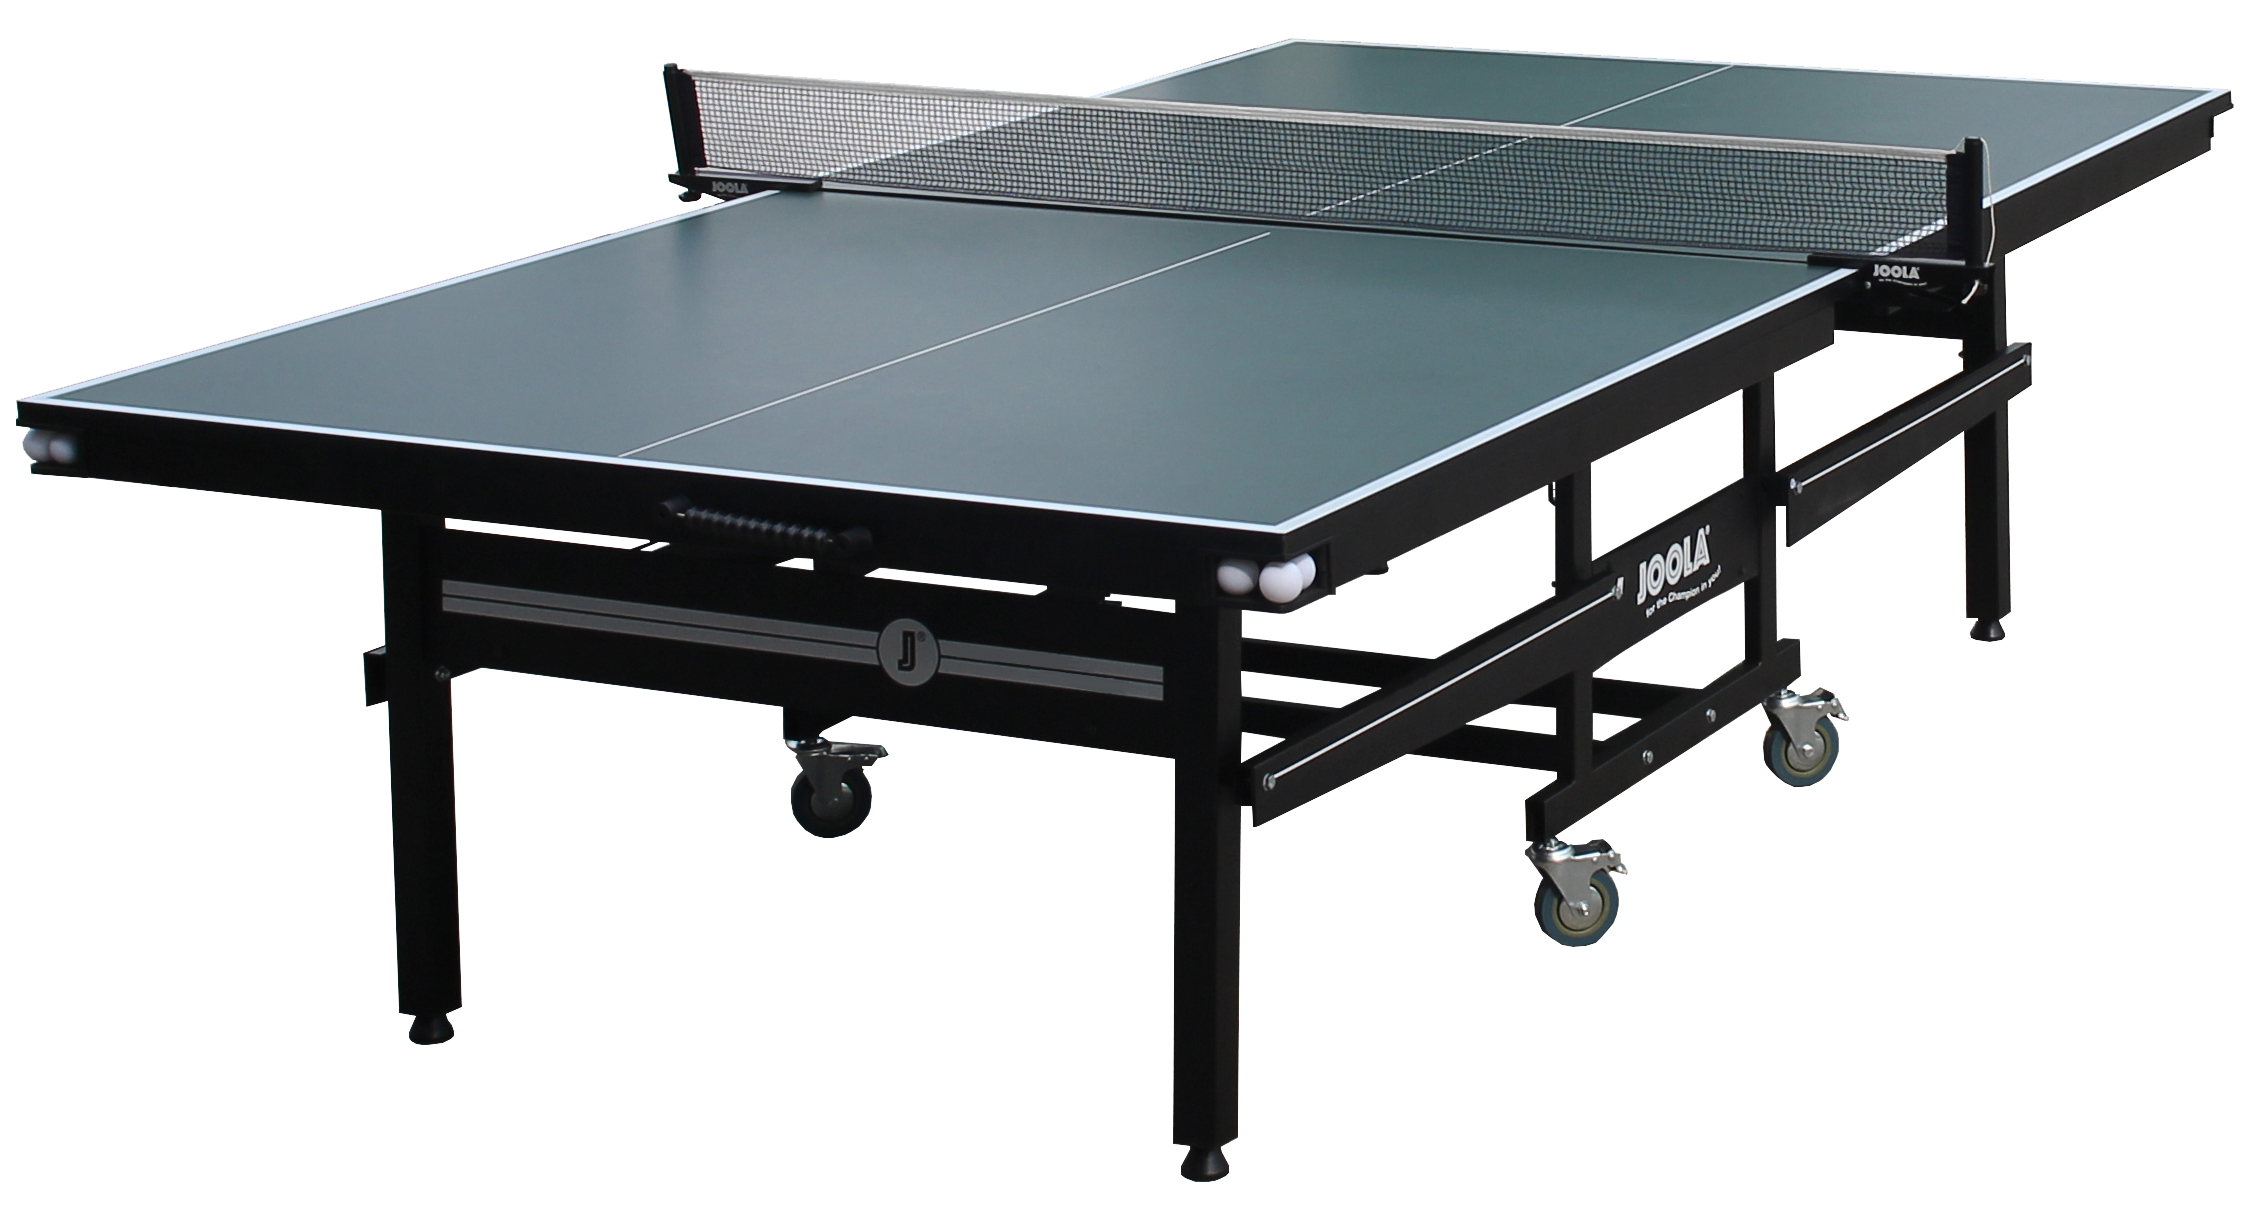 JOOLA SIGNATURE (25mm) Table Tennis Table